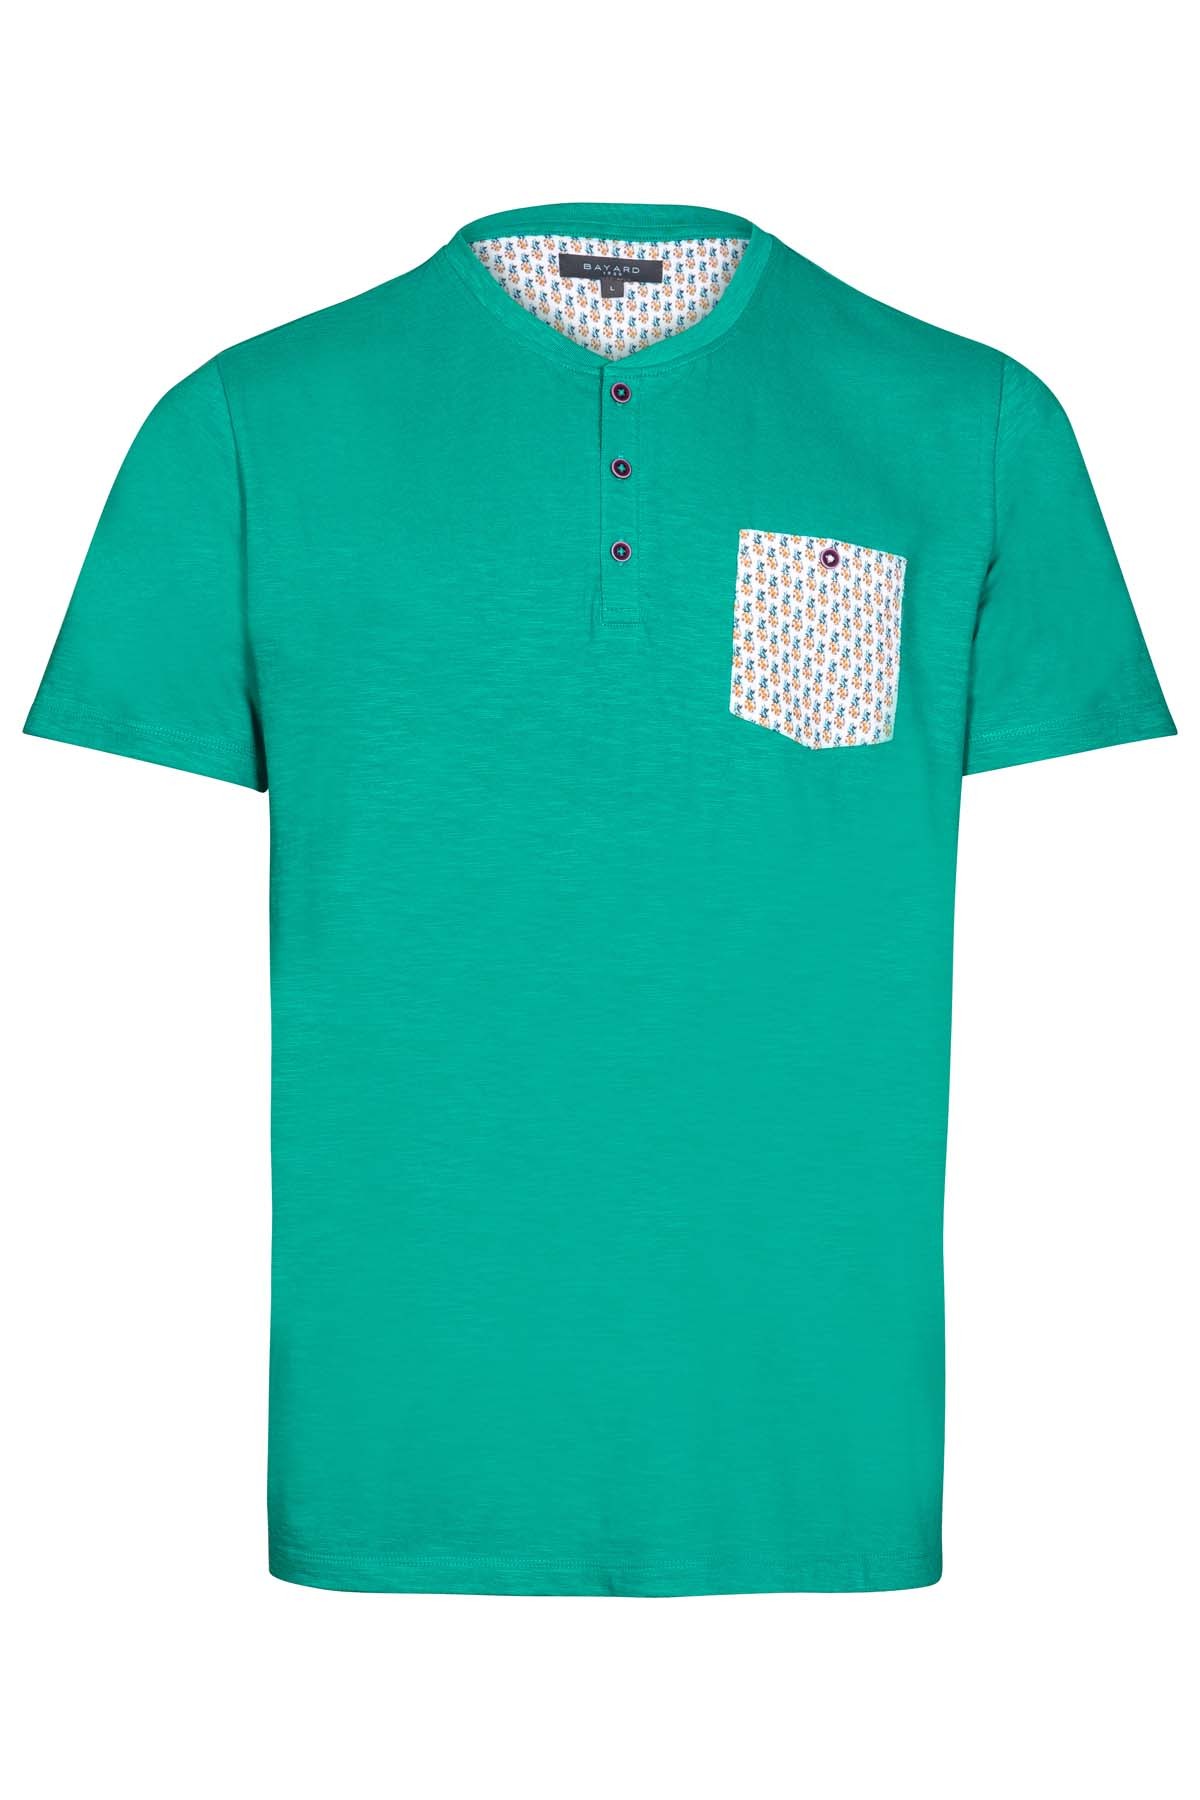 t-shirt vert émeraude en coton Bayard